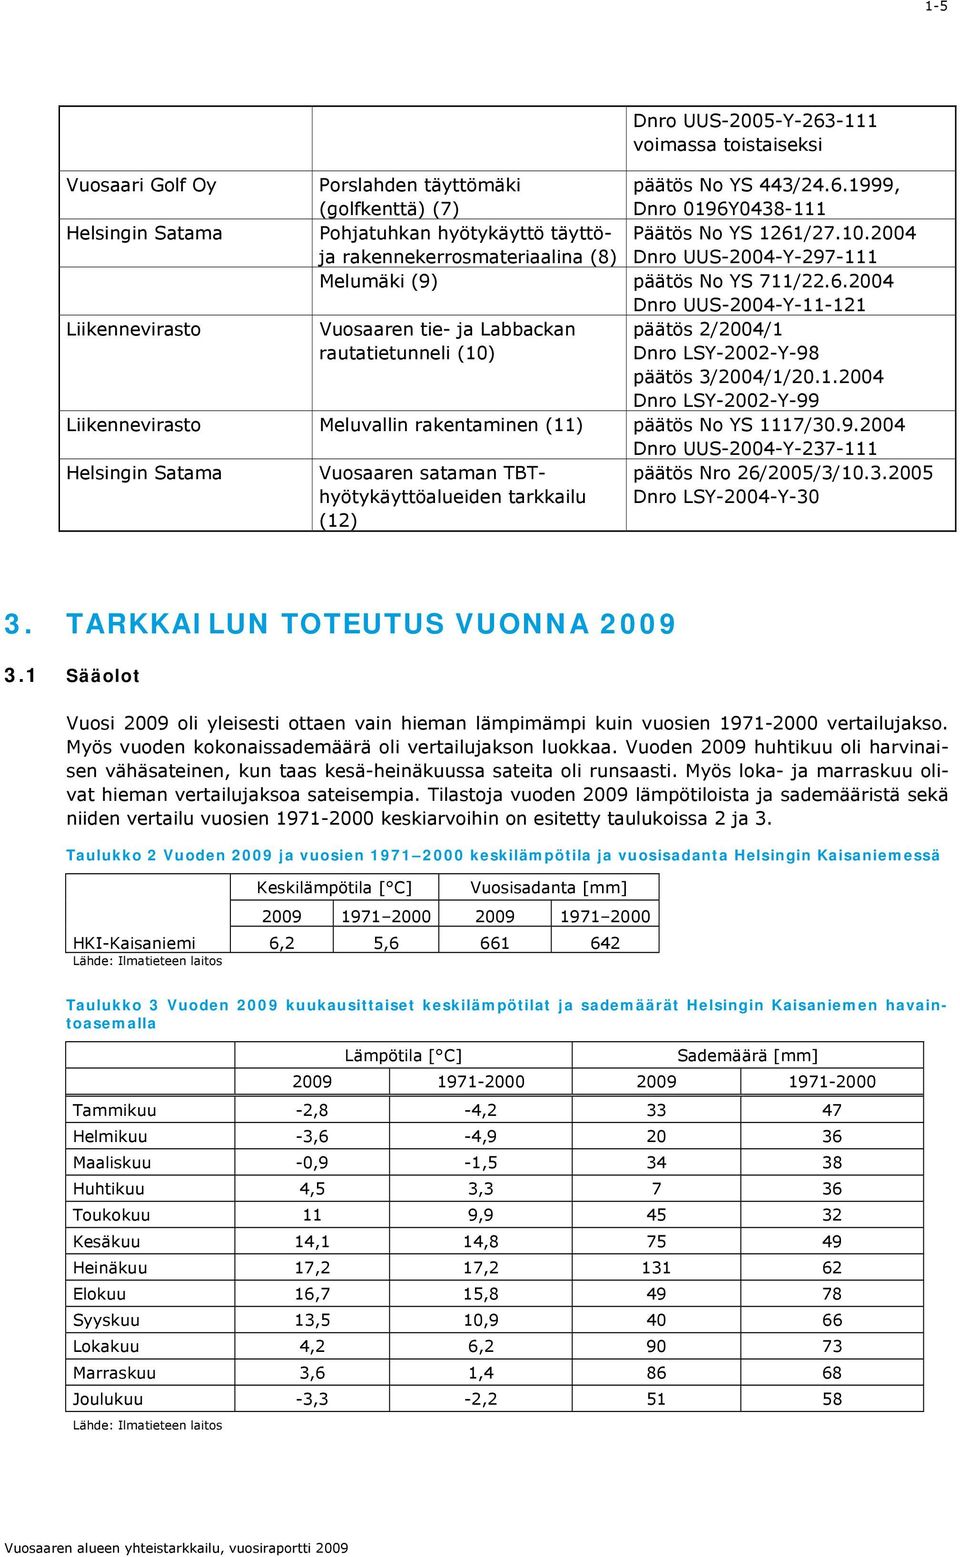 1.004 Dnro LSY-00-Y-99 Liikennevirasto Meluvallin rakentaminen (11) päätös No YS 1117/30.9.004 Dnro UUS-004-Y-37-111 Helsingin Satama Vuosaaren sataman TBThyötykäyttöalueiden tarkkailu (1) päätös Nro 6/005/3/10.